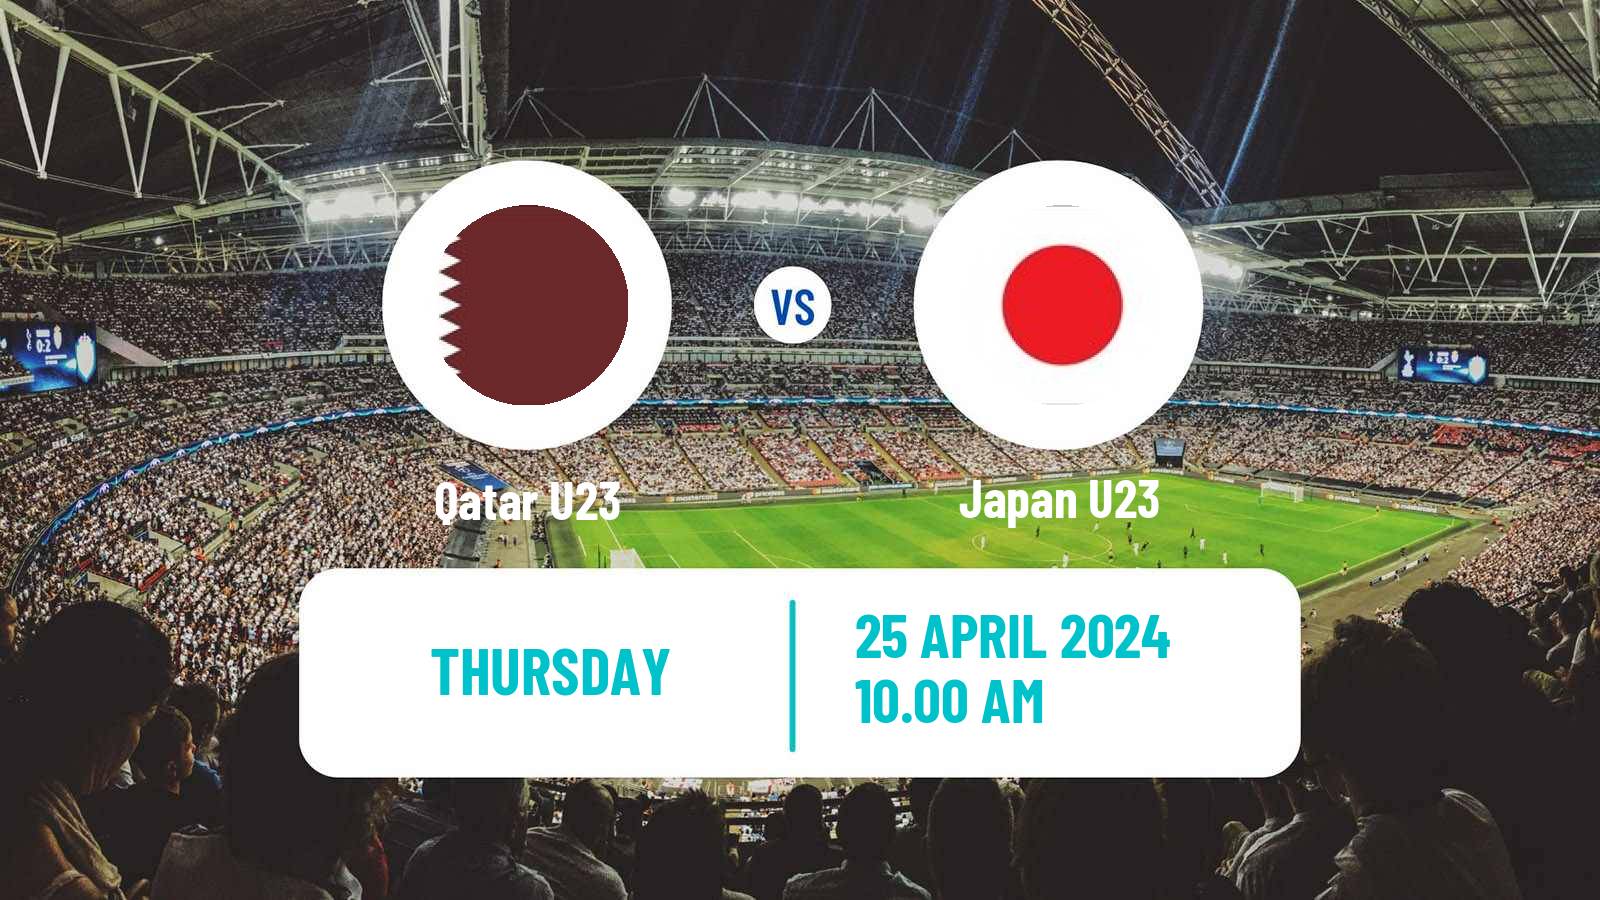 Soccer AFC Asian Cup U23 Qatar U23 - Japan U23